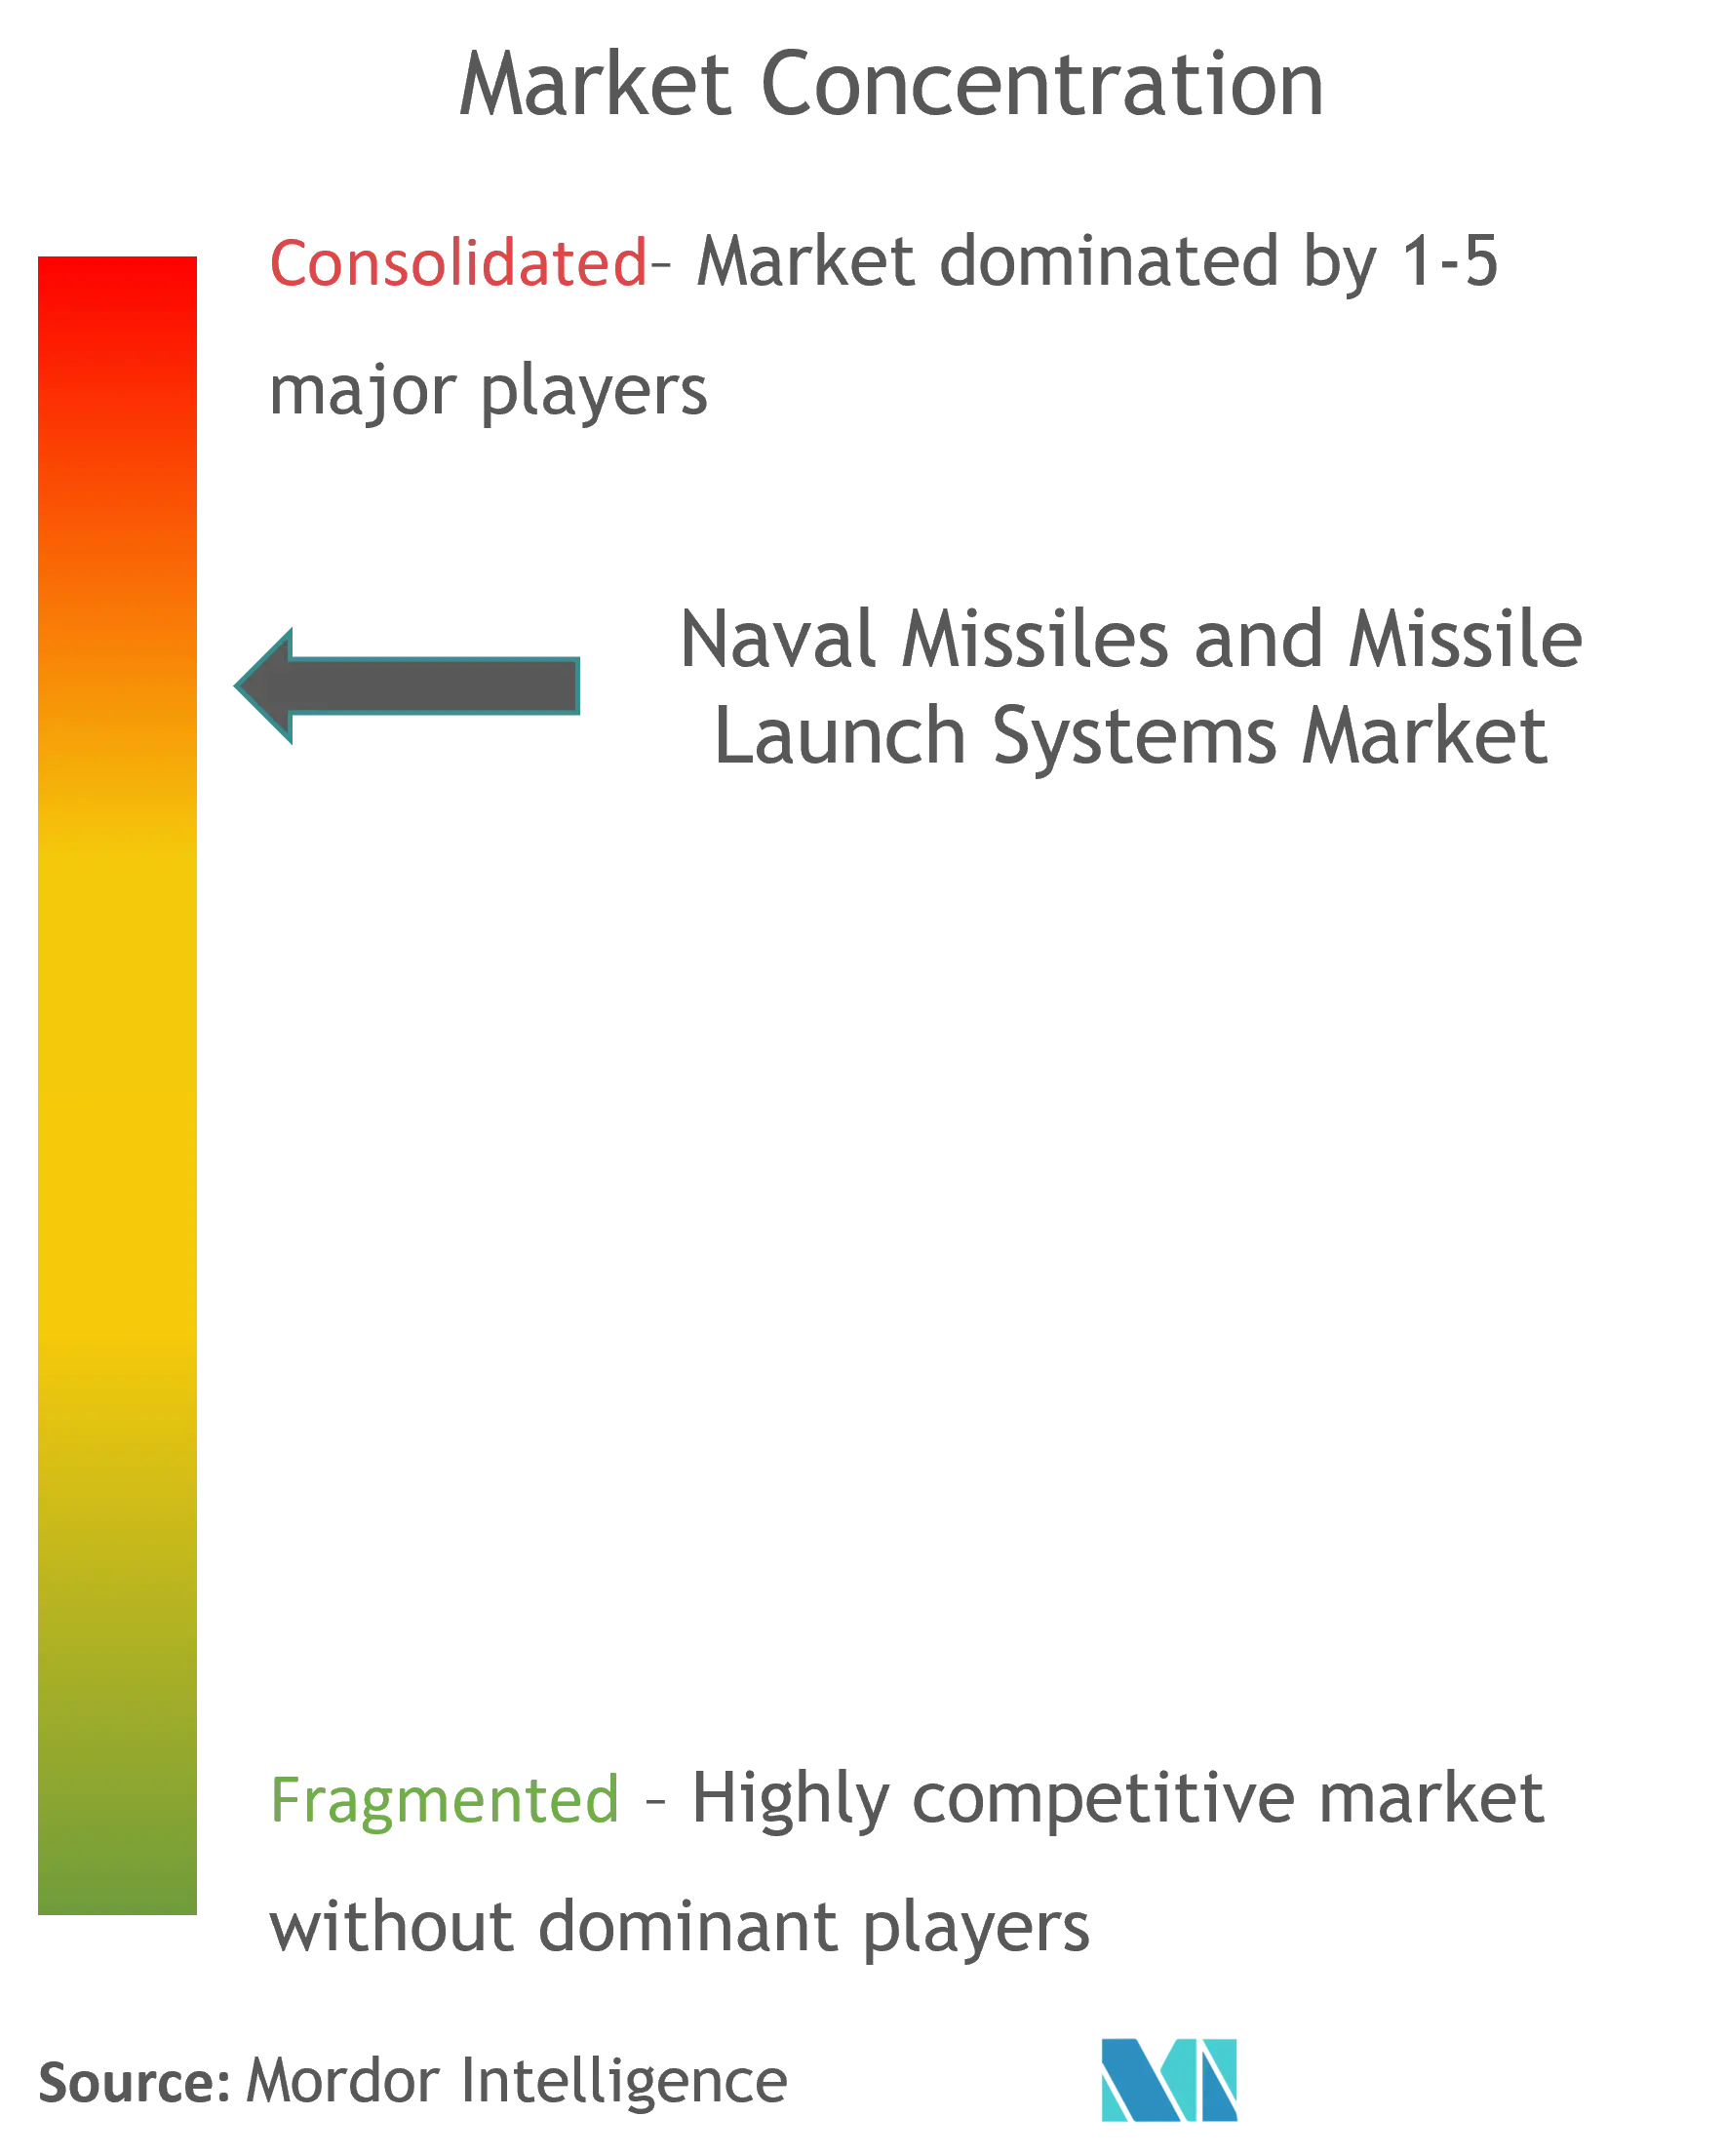 海軍ミサイルおよびミサイル発射システム市場集中度